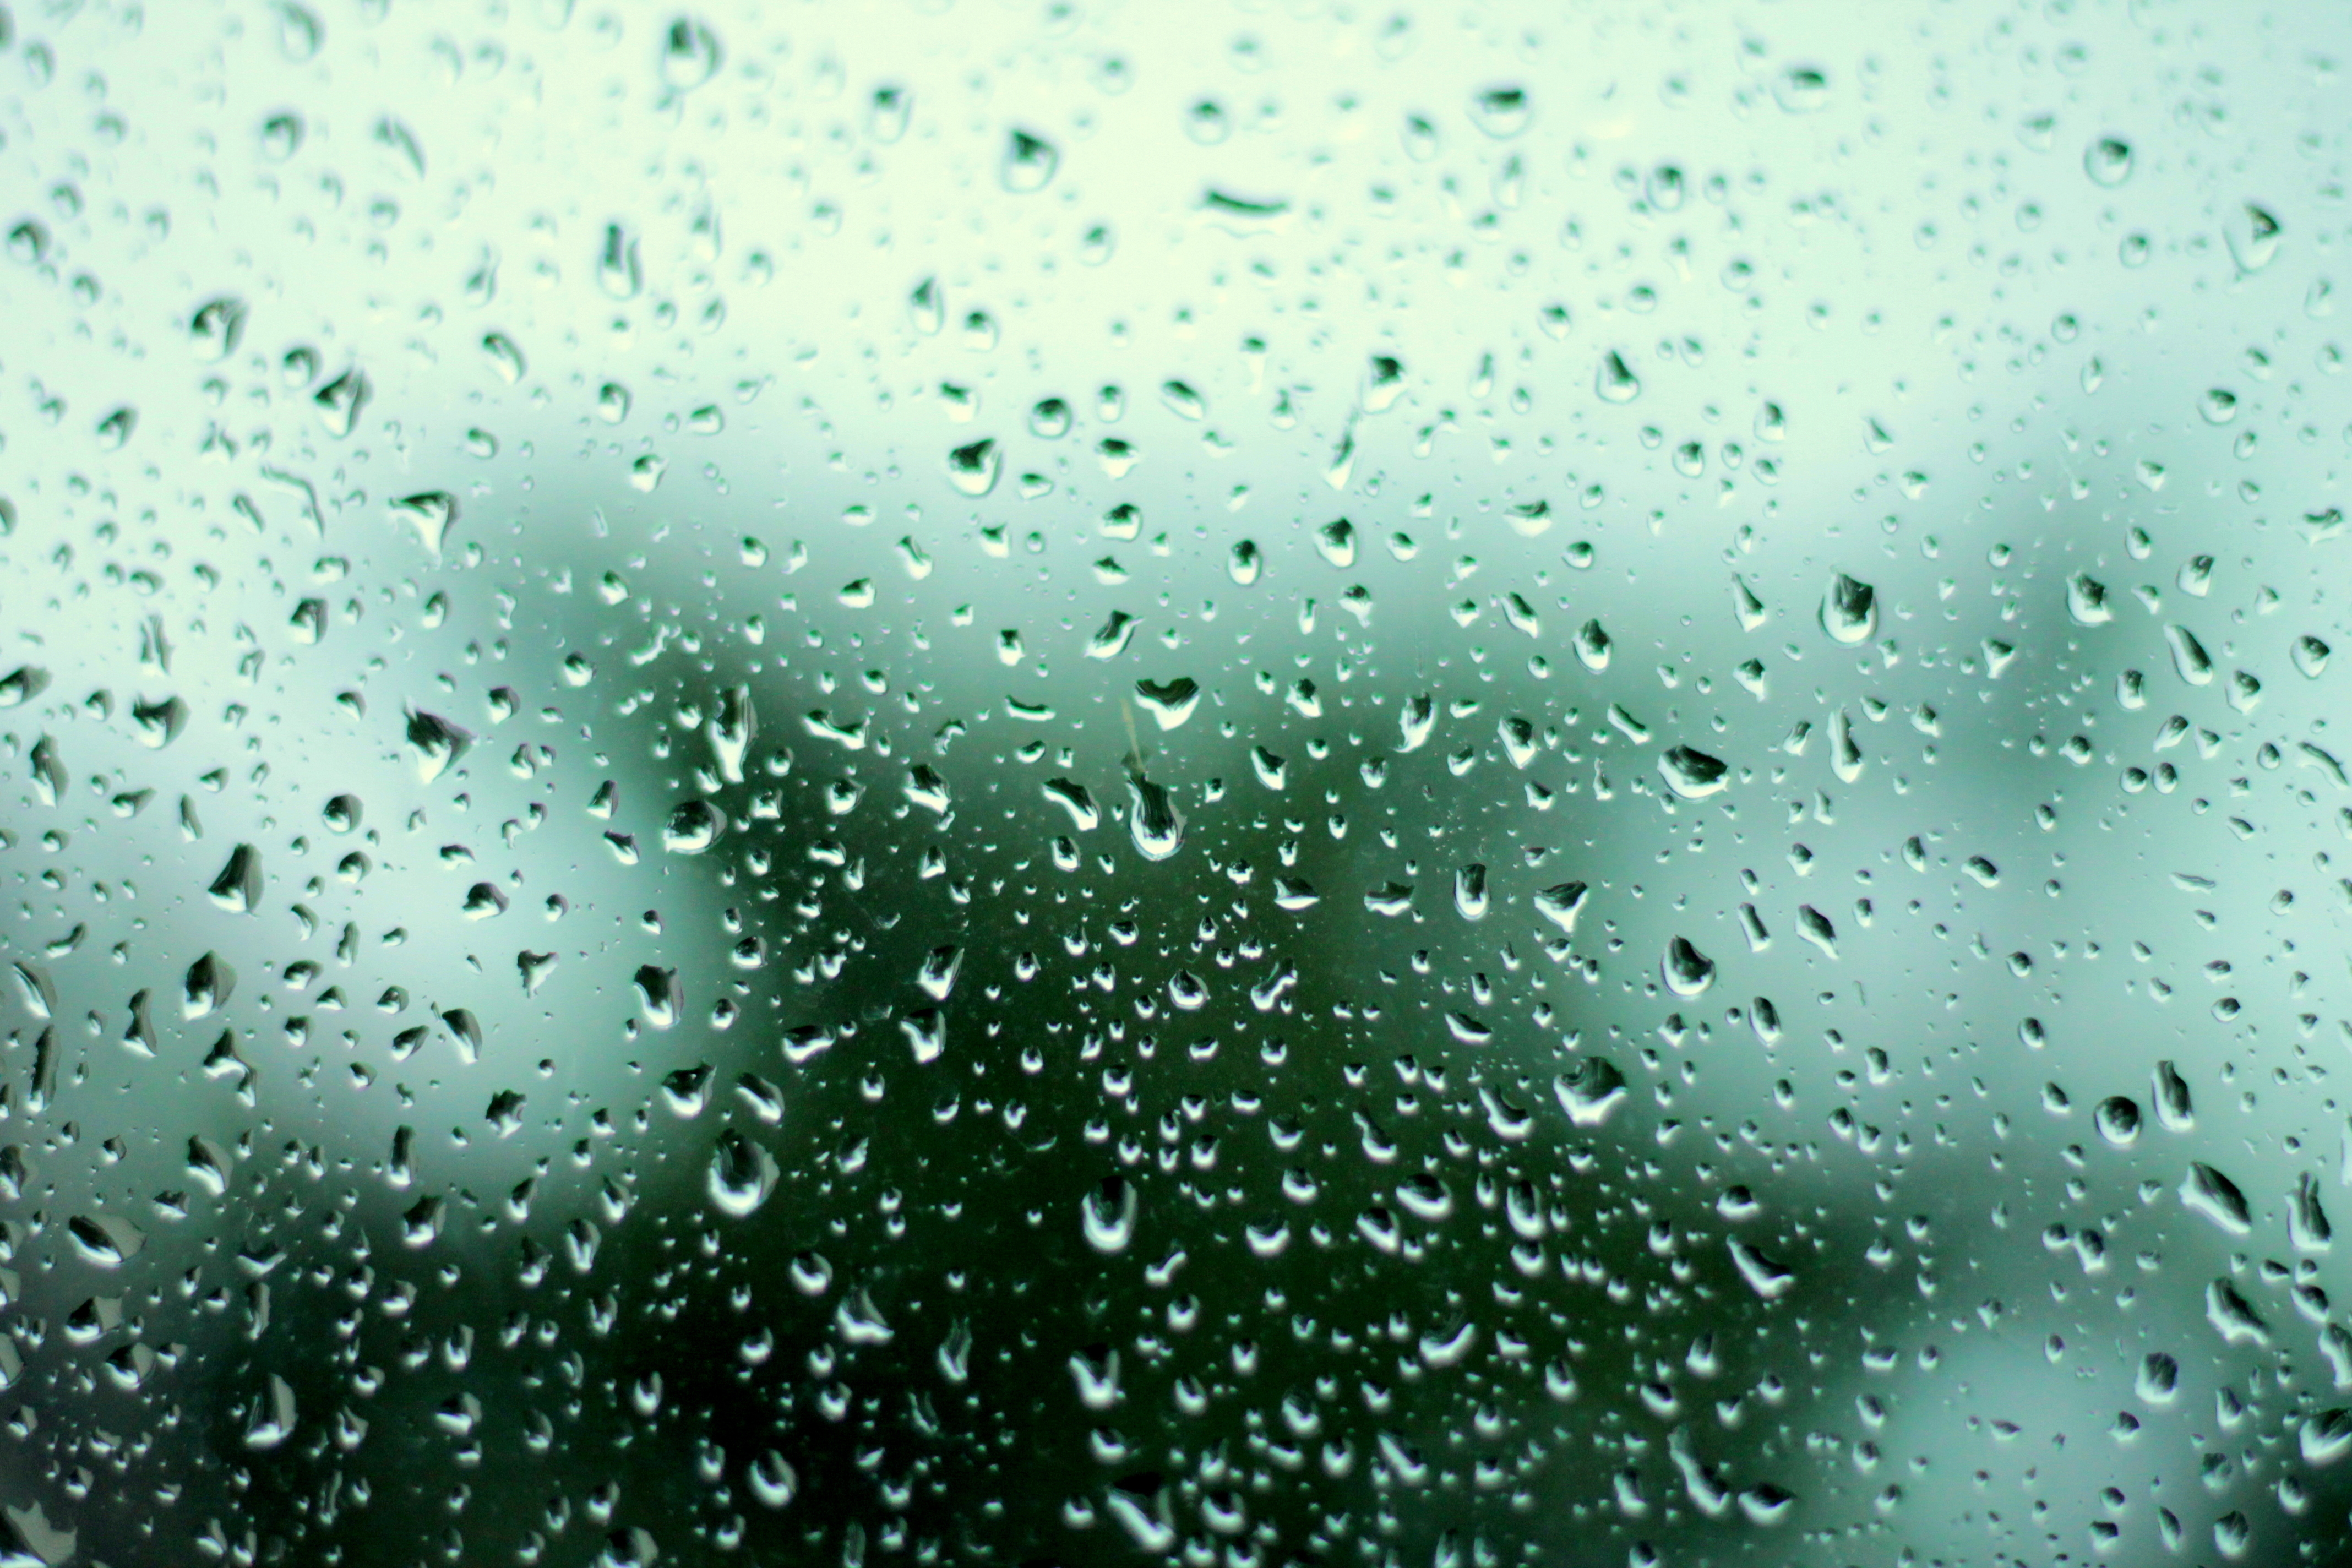 Org rain. Капли на стекле. Капли дождя. Обои дождь. Капли дождя на стекле.